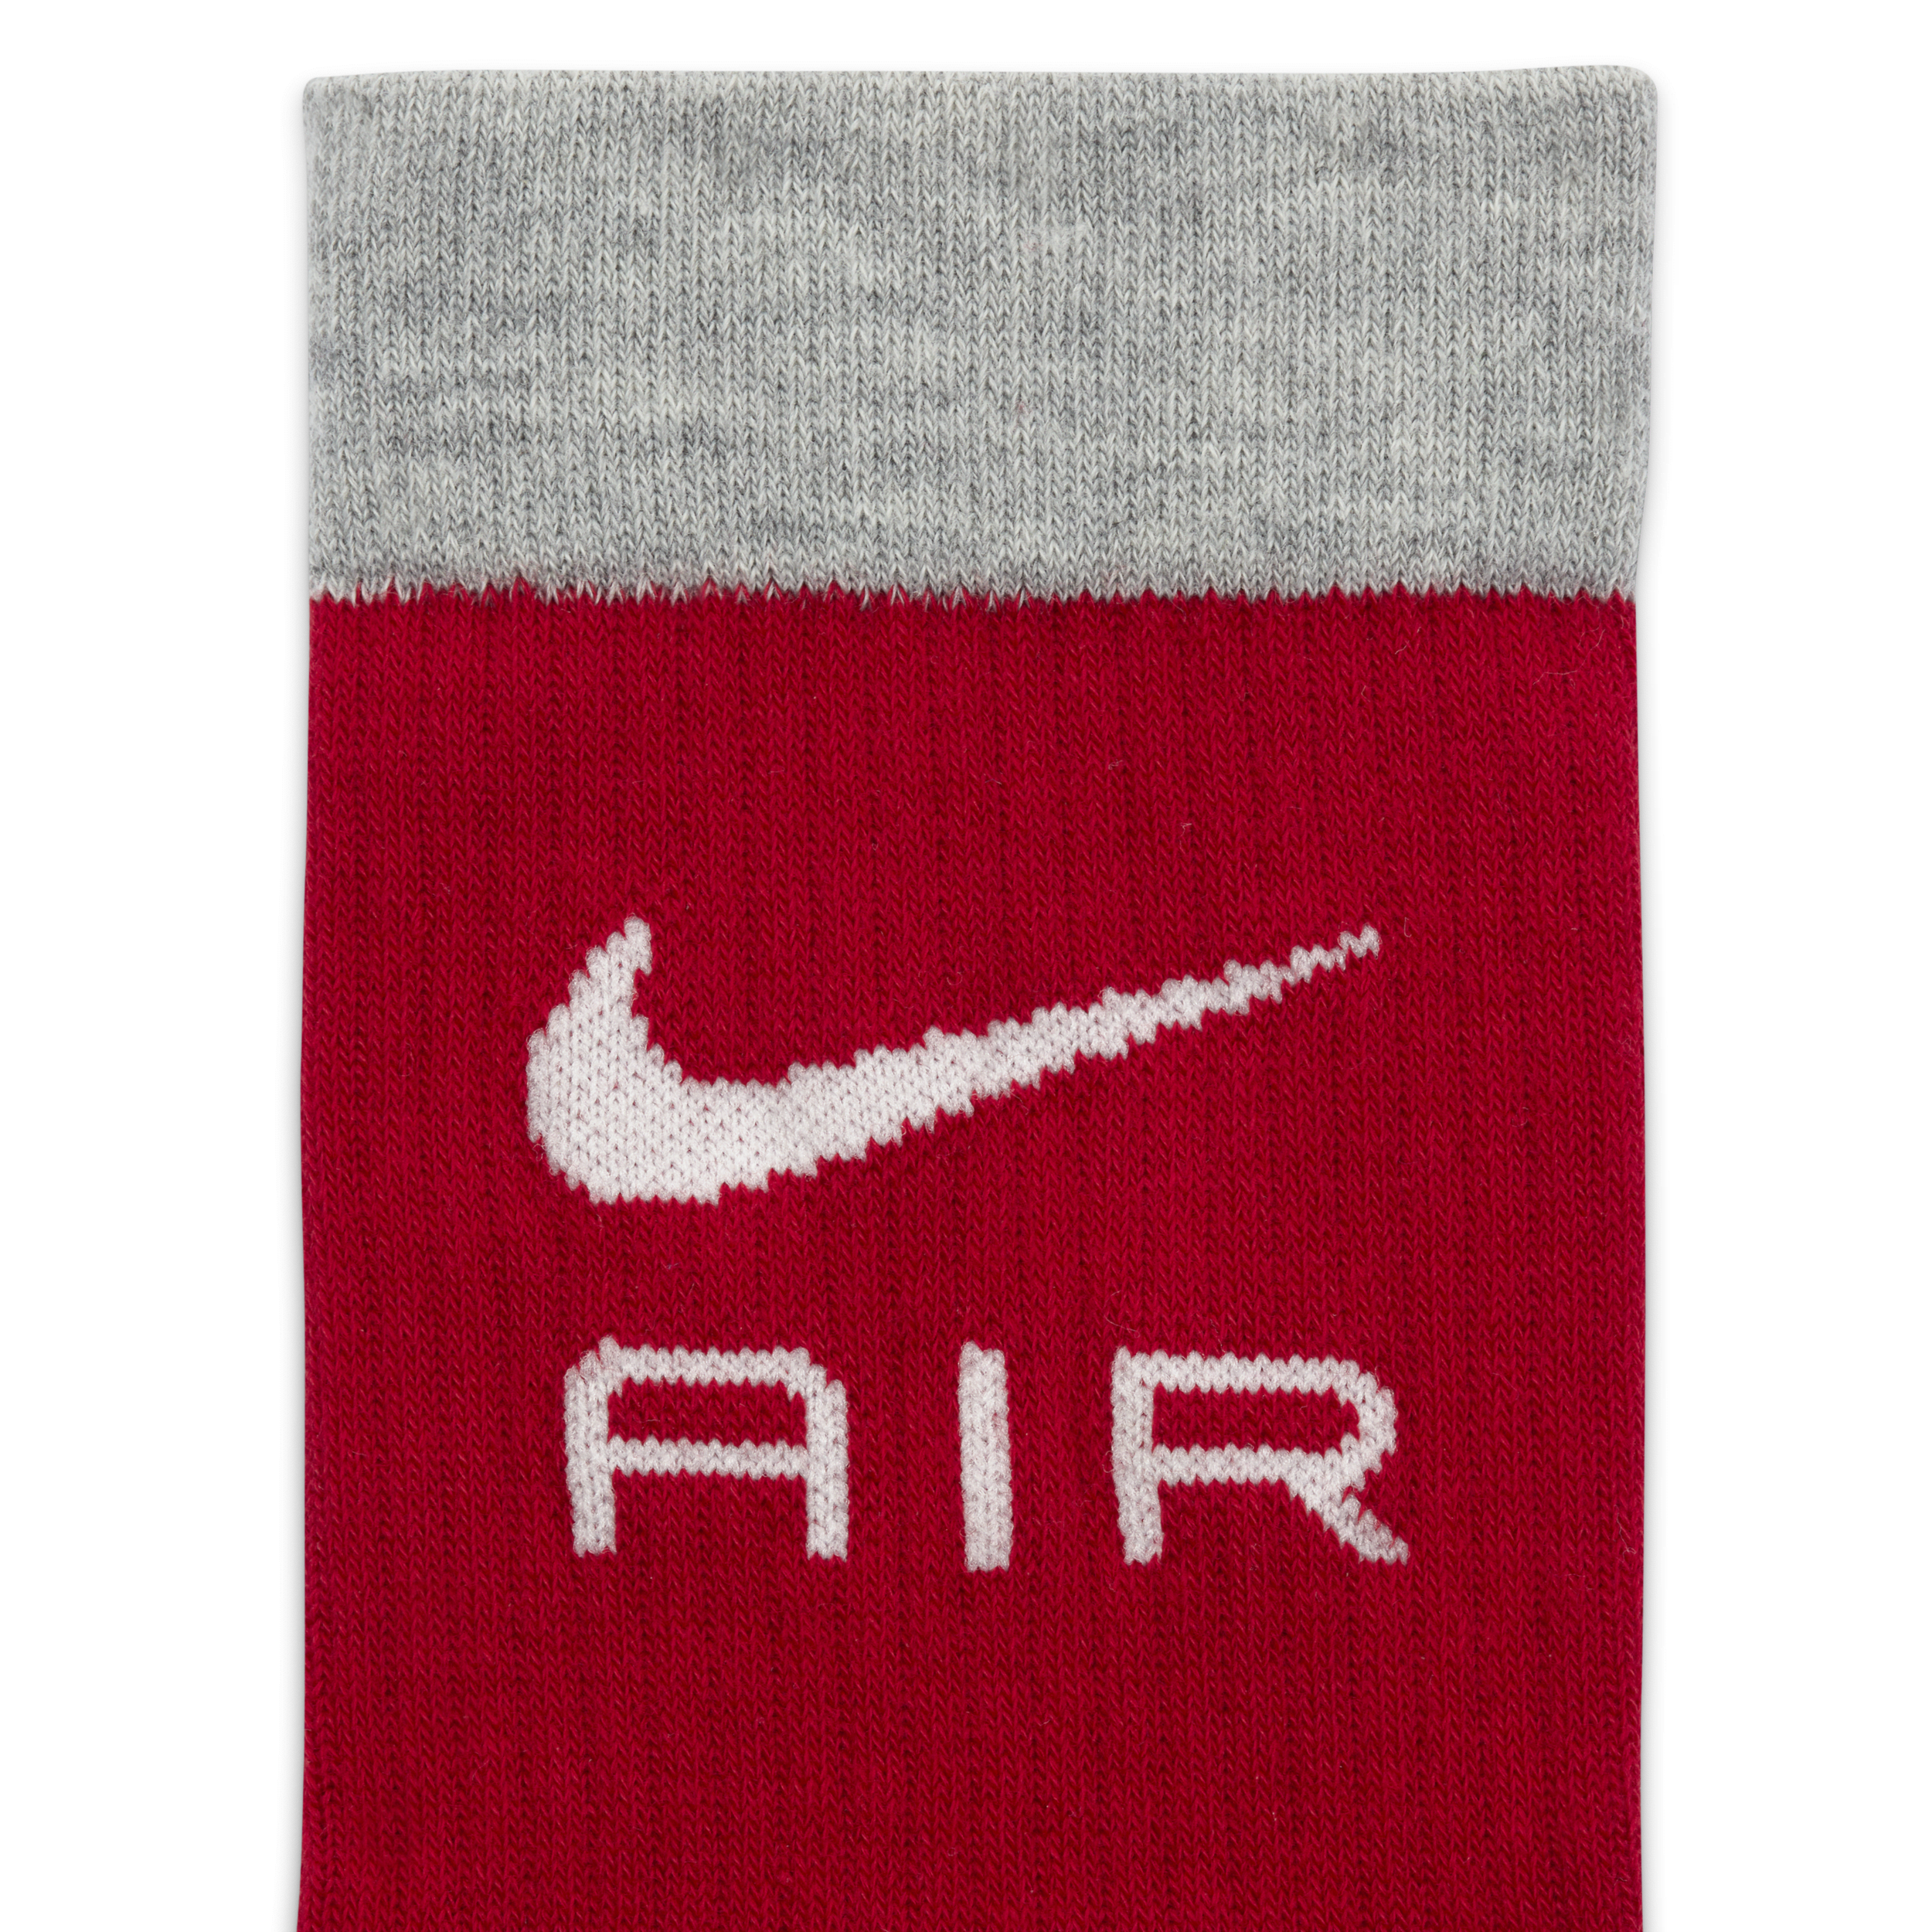 Nike Everyday Essentials crew sokken (2 paar) Meerkleurig